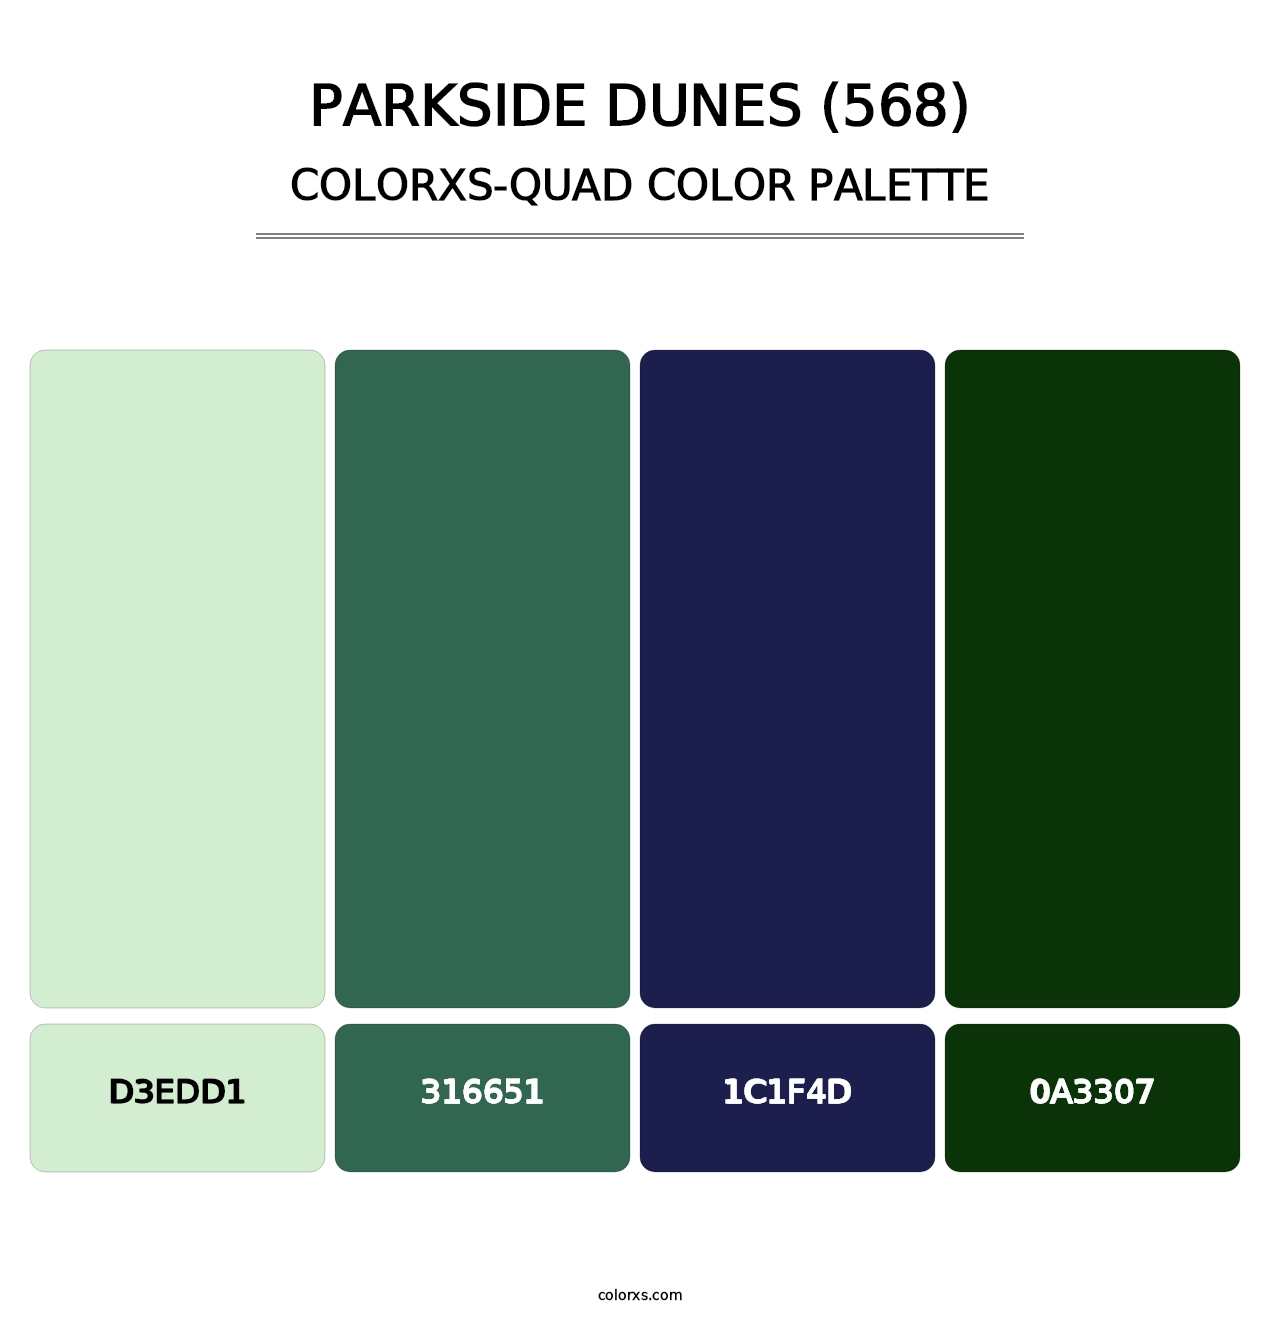 Parkside Dunes (568) - Colorxs Quad Palette